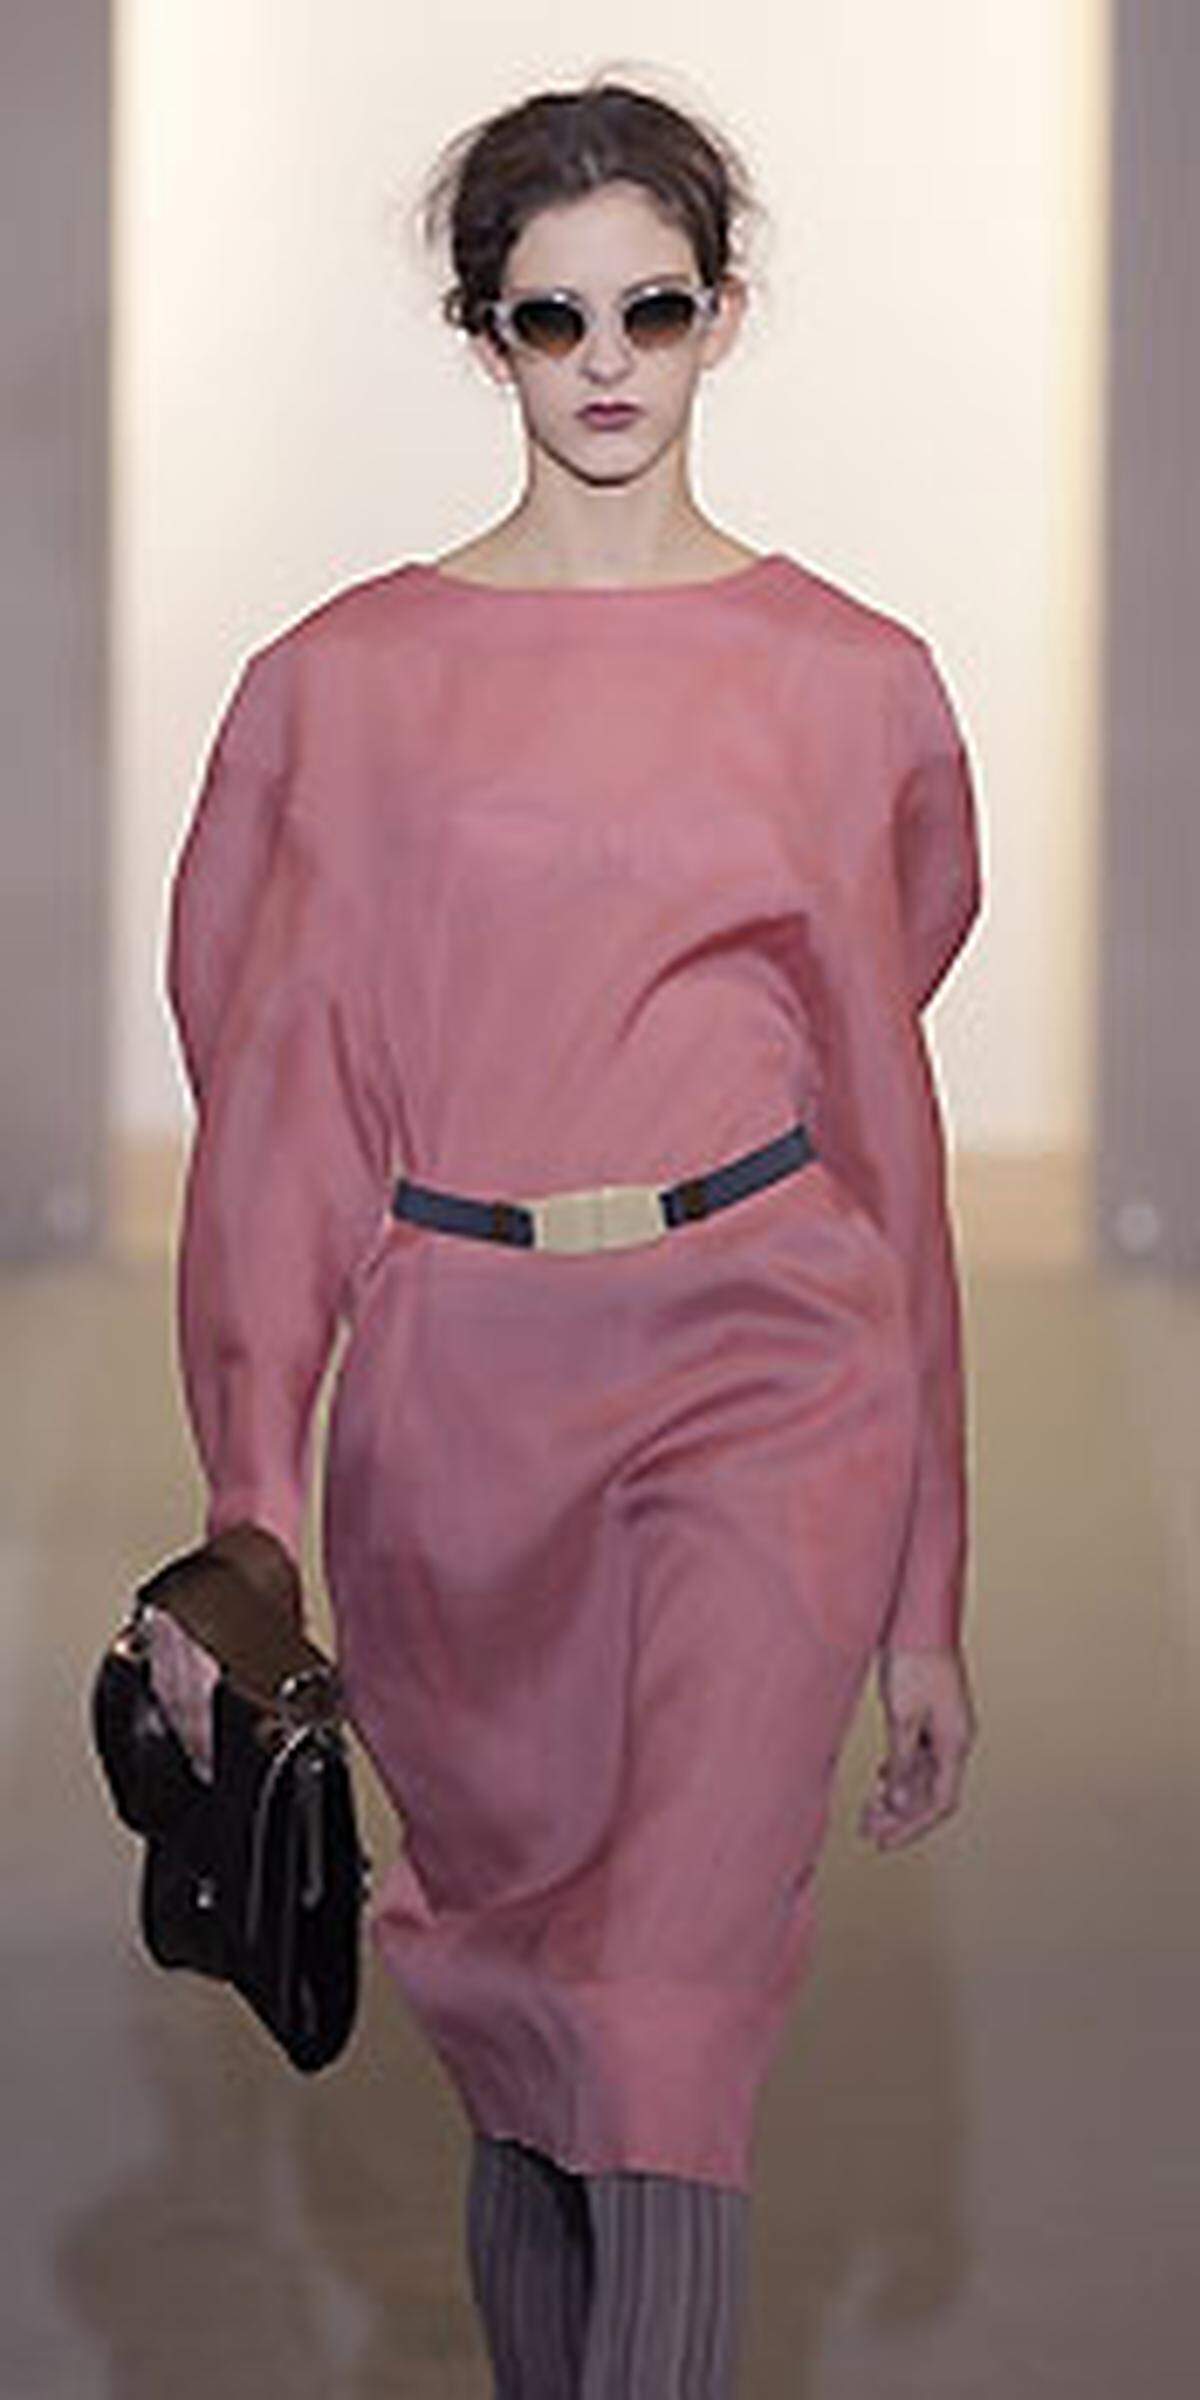 Alle Zeichen stehen auf Schlichtheit. Auch bei Marni. Nur kann das bei Consuelo Castiglioni dennoch extravagant wirken: durch die Kombination von Grau mit Rosa und Pink, durch technische Stoffe und durch unaufdringliche Pelzelemente.